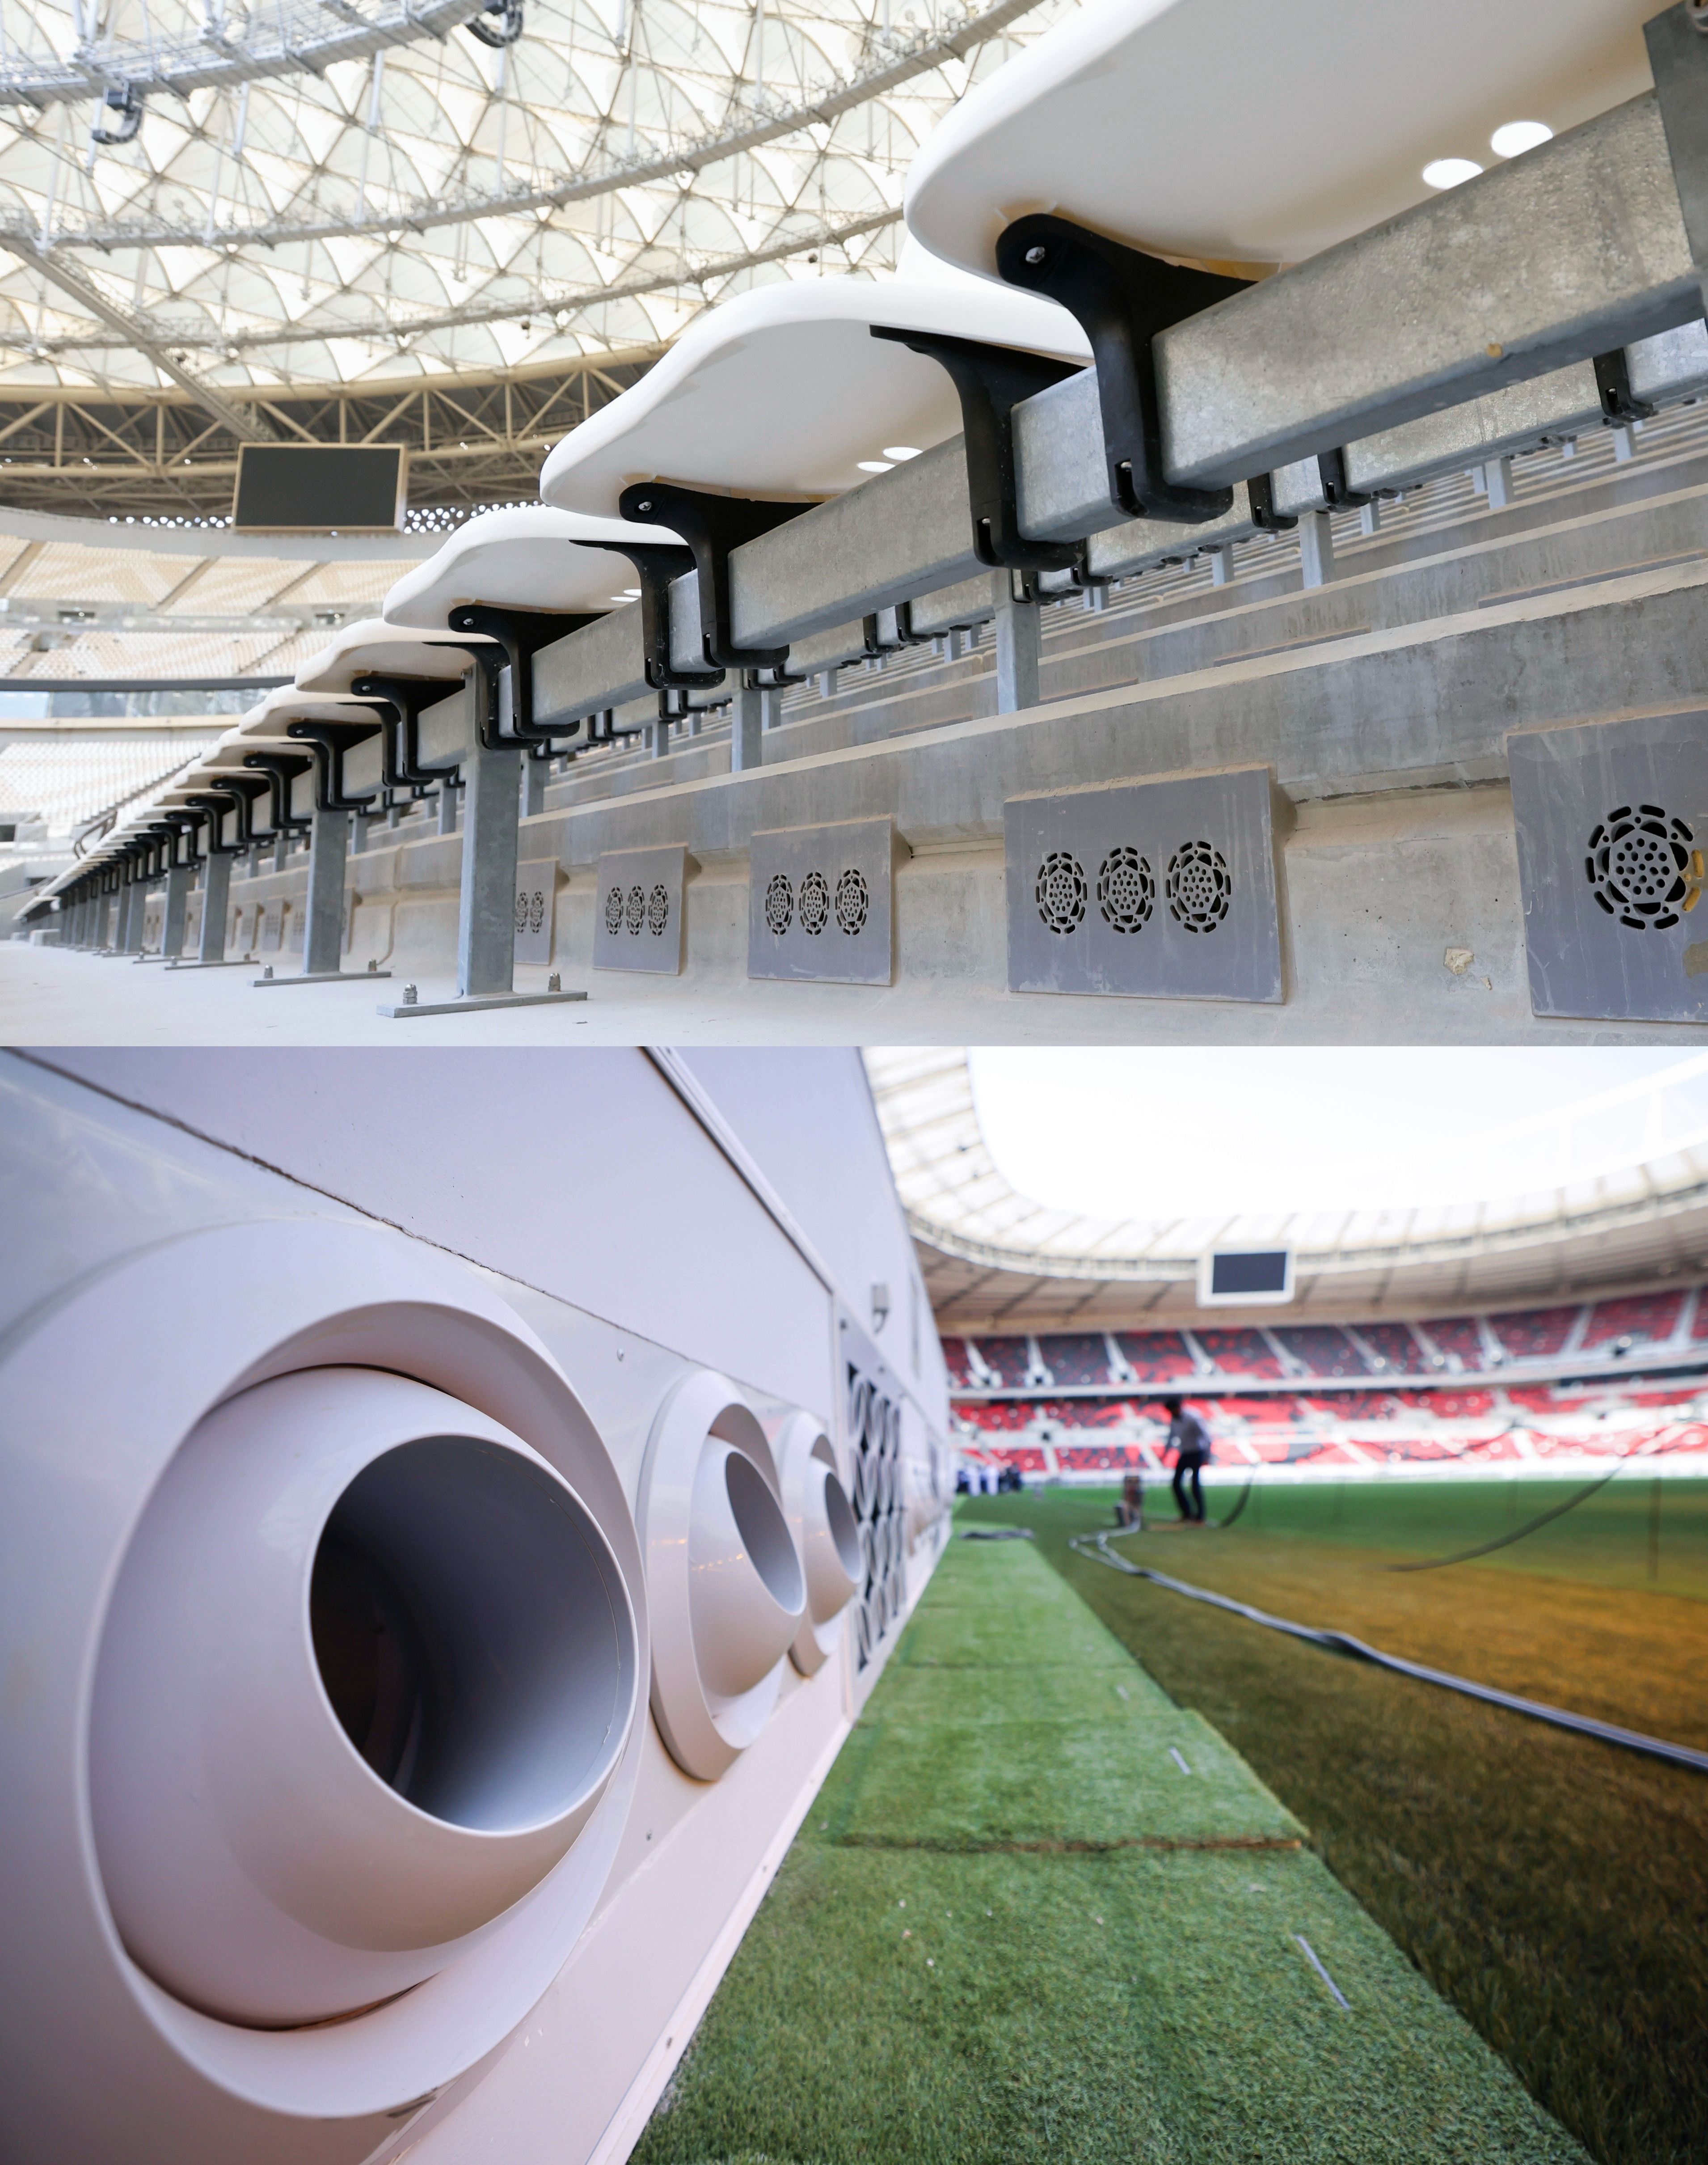 Turnuva öncesi fotoğraflar, Lusail Stadyumu'ndaki (üstte) koltuk altı ızgaraları ve Ahmad Bin Ali Stadyumu'ndaki (altta) saha kenarındaki nozülleri gösteriyor.  Bunlar, Katar'daki arenalara soğutulmuş hava üflemek için kullanılır.  (Kyodo/AP; Christian Charisius—picture-alliance/dpa/AP)